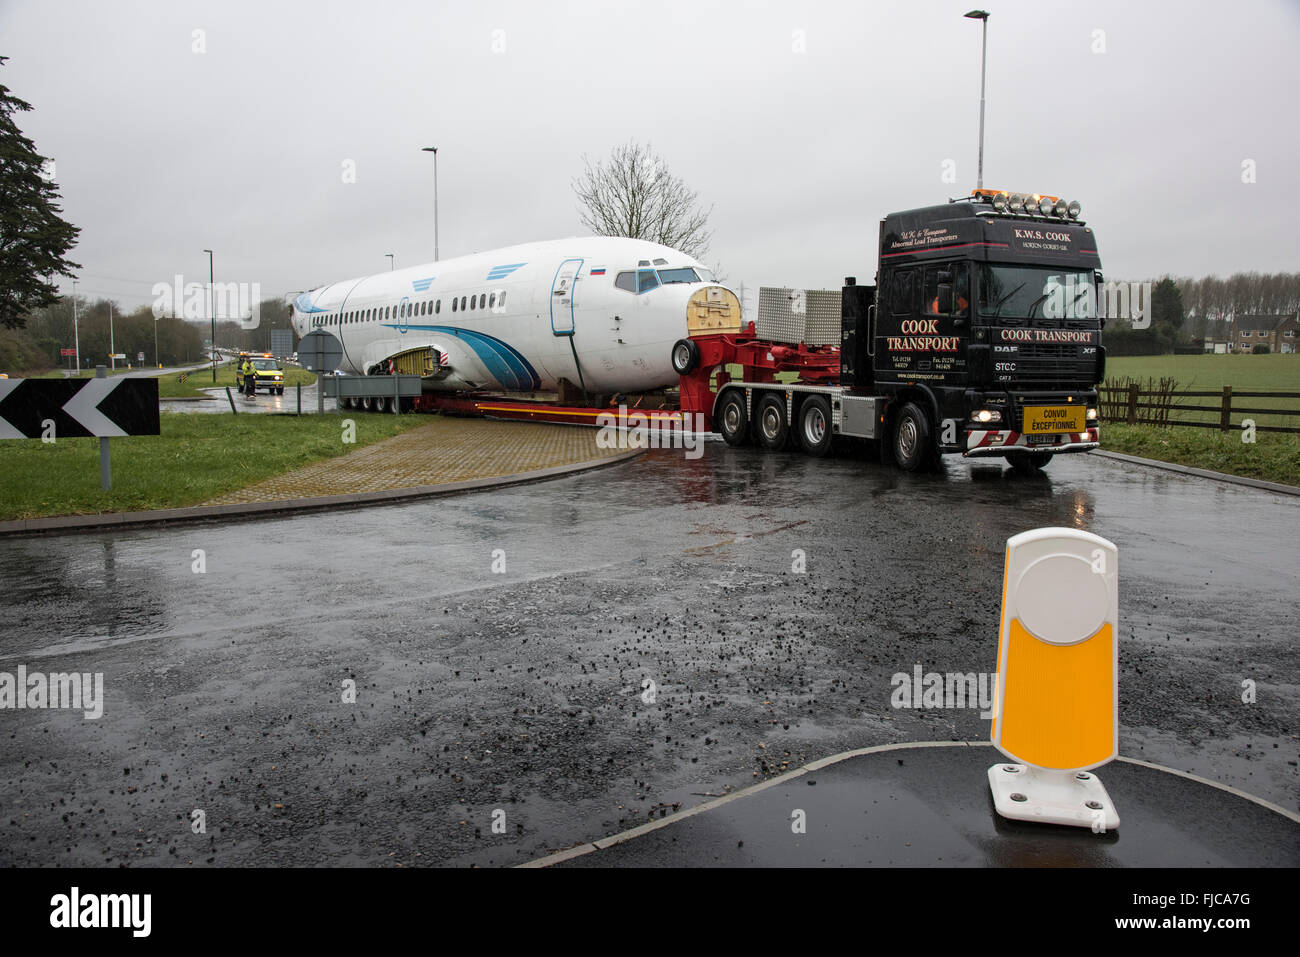 Cuocere i trasporti bassa carrello caricatore tenendo un carico anomalo costituito da un Boeing 737 aereo di linea fusoliera lungo la A419 vicino Cirence Foto Stock